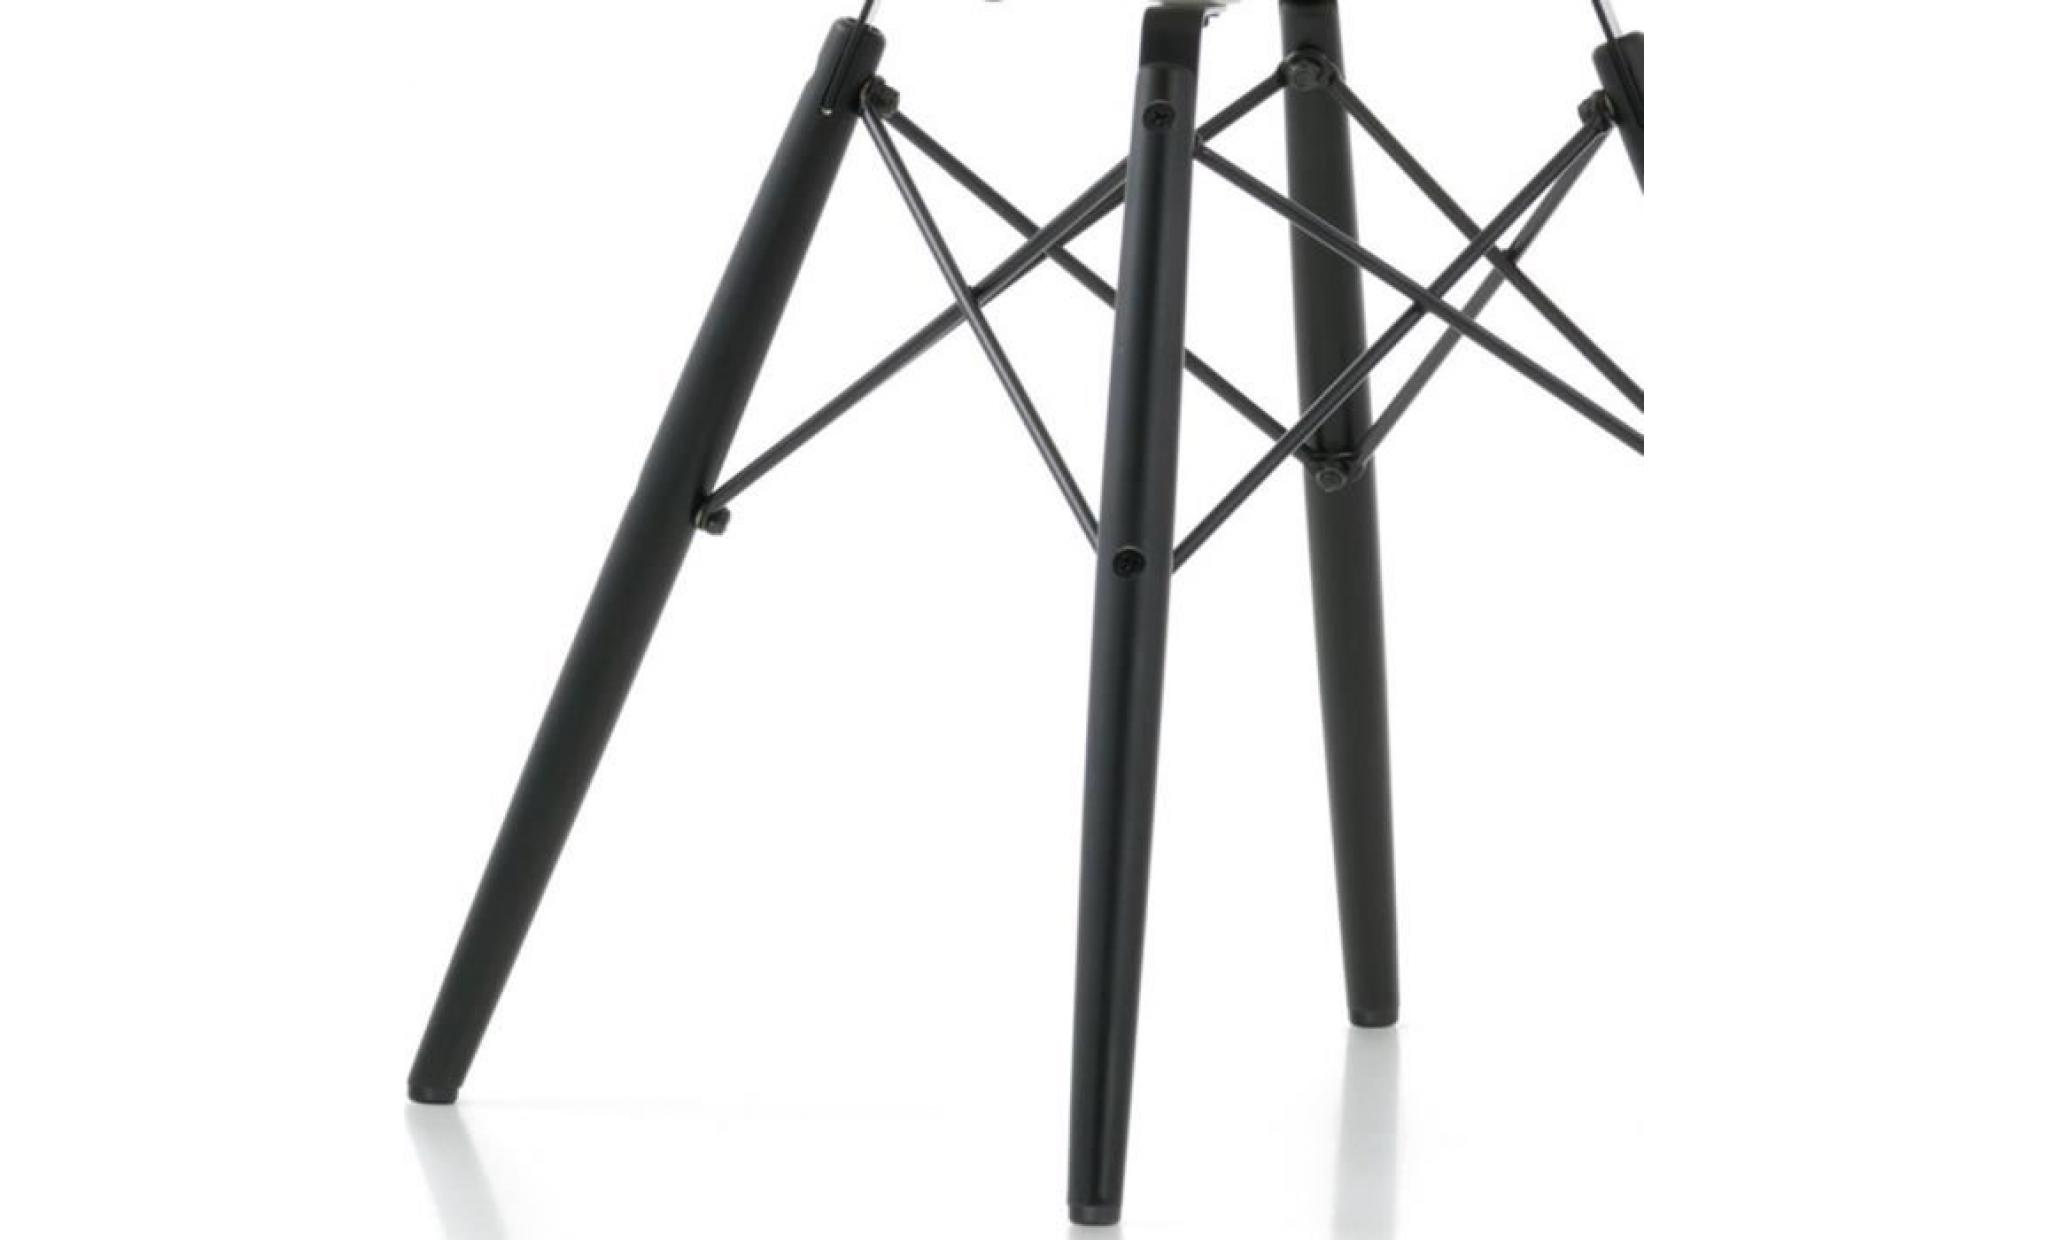 1 x chaise design inspiration eiffel dsw bois noir transparent gris mobistyl® pas cher